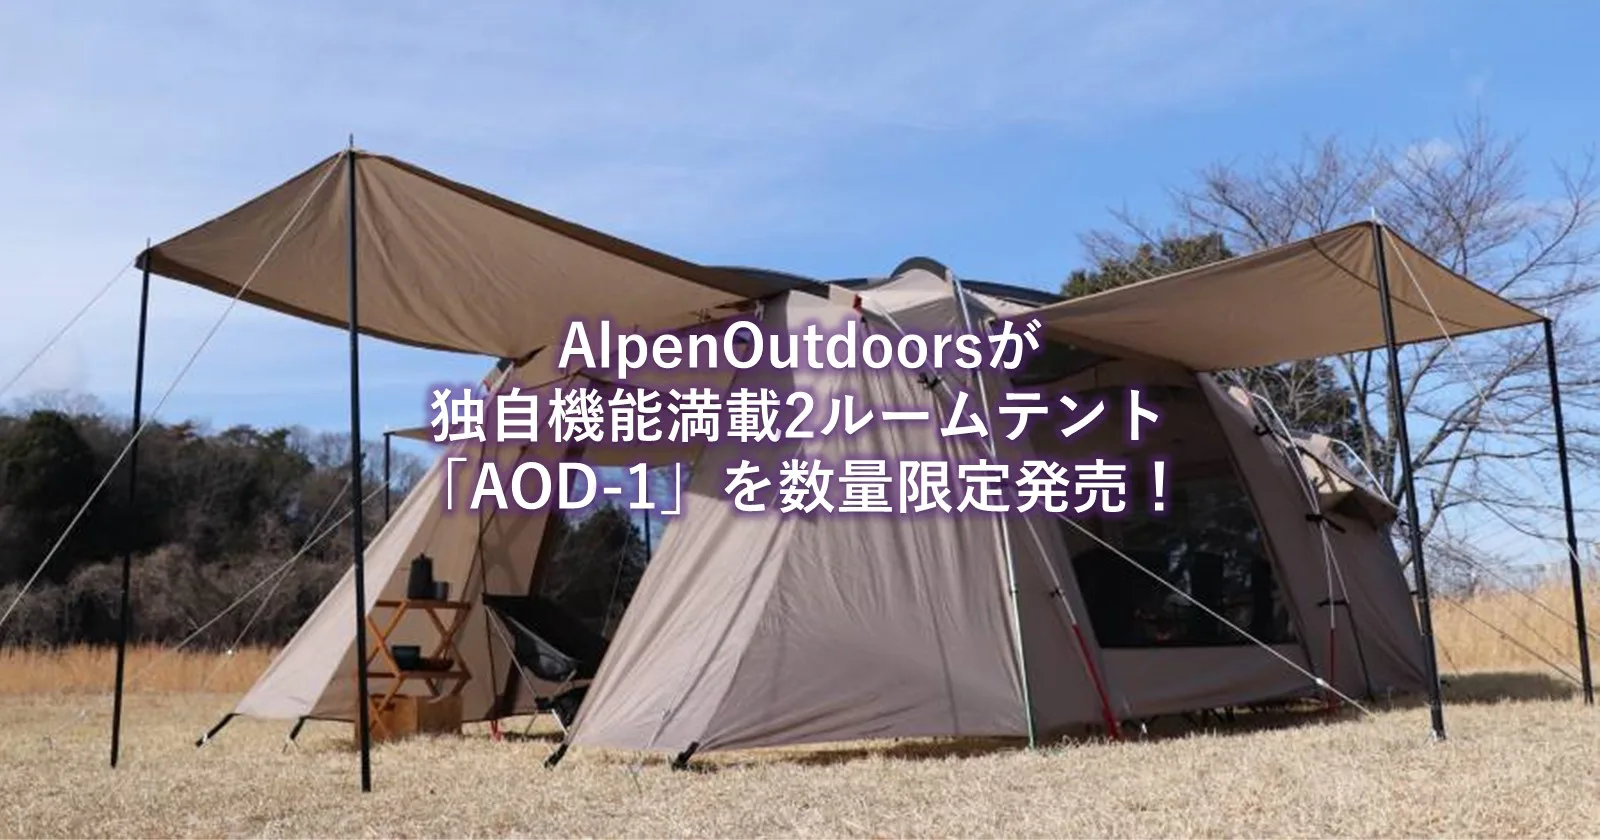 AlpenOutdoors（アルペンアウトドアーズ）が2ルームテント「AOD-1」を 